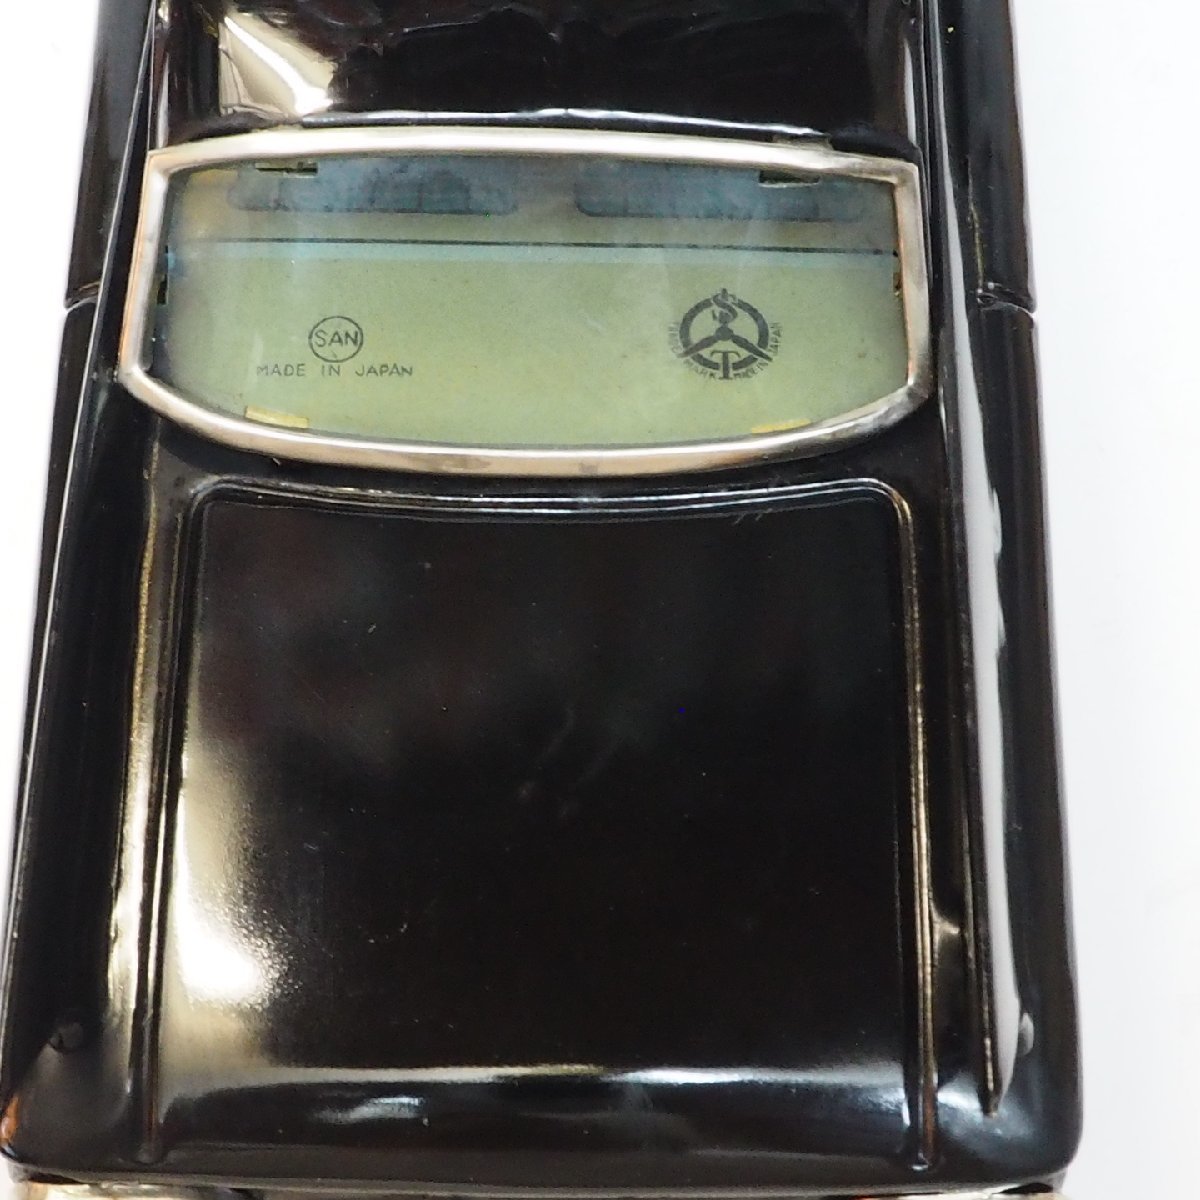  maru солнечный 3828[NEW CADILLAC SEDAN Cadillac седан чёрный черный ] жестяная пластина tin toy car миниатюра автомобиль миникар #MARUSAN[ с ящиком ]0036